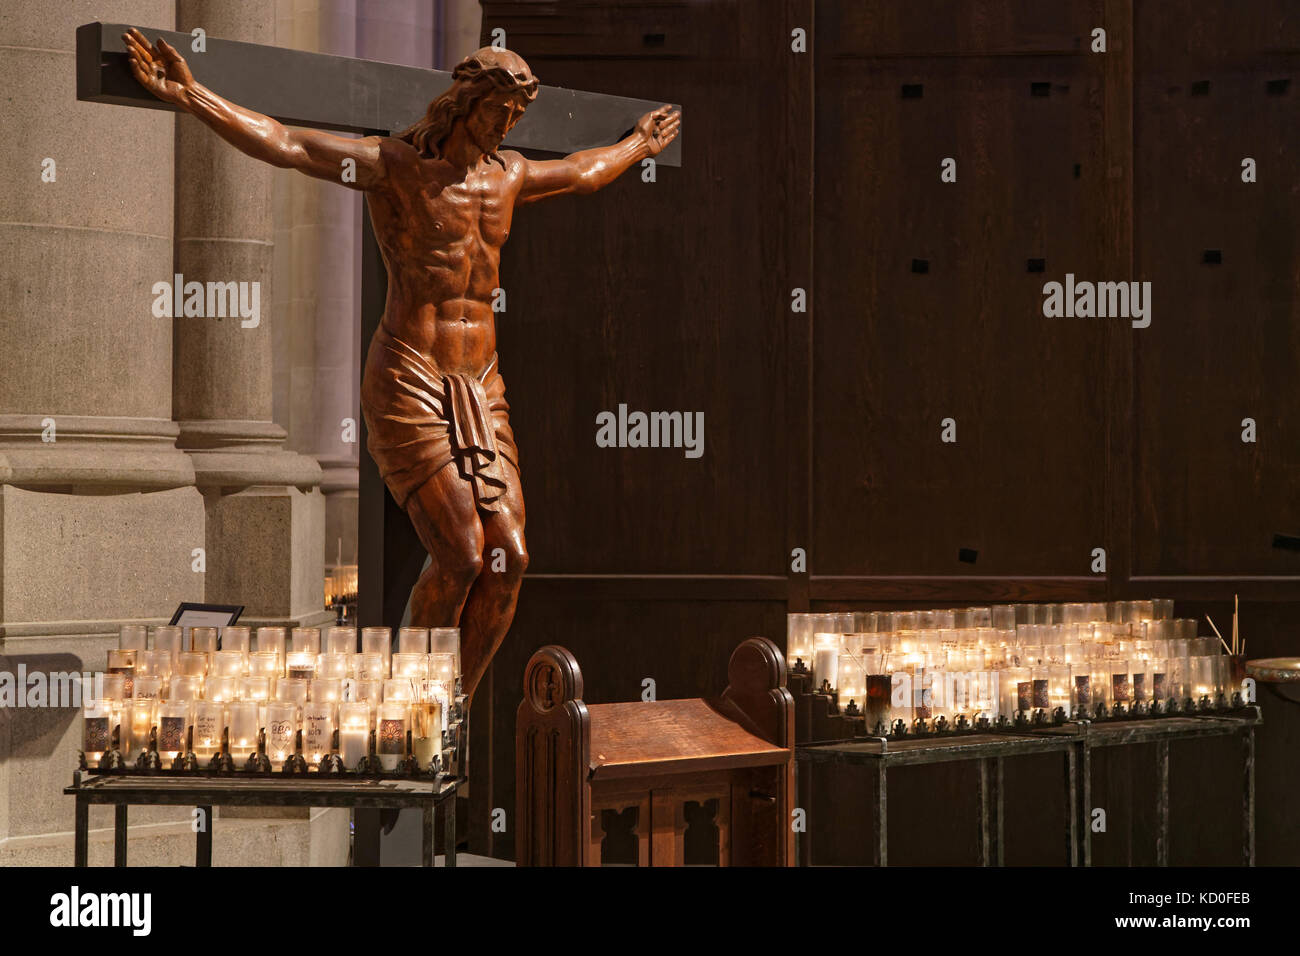 NEW YORK CITY, USA, 13. September 2017 : Kathedrale von St. John the Divine. Die Kathedrale der Bischofsdiözese New York hat einen radikalen Streich durchgemacht Stockfoto